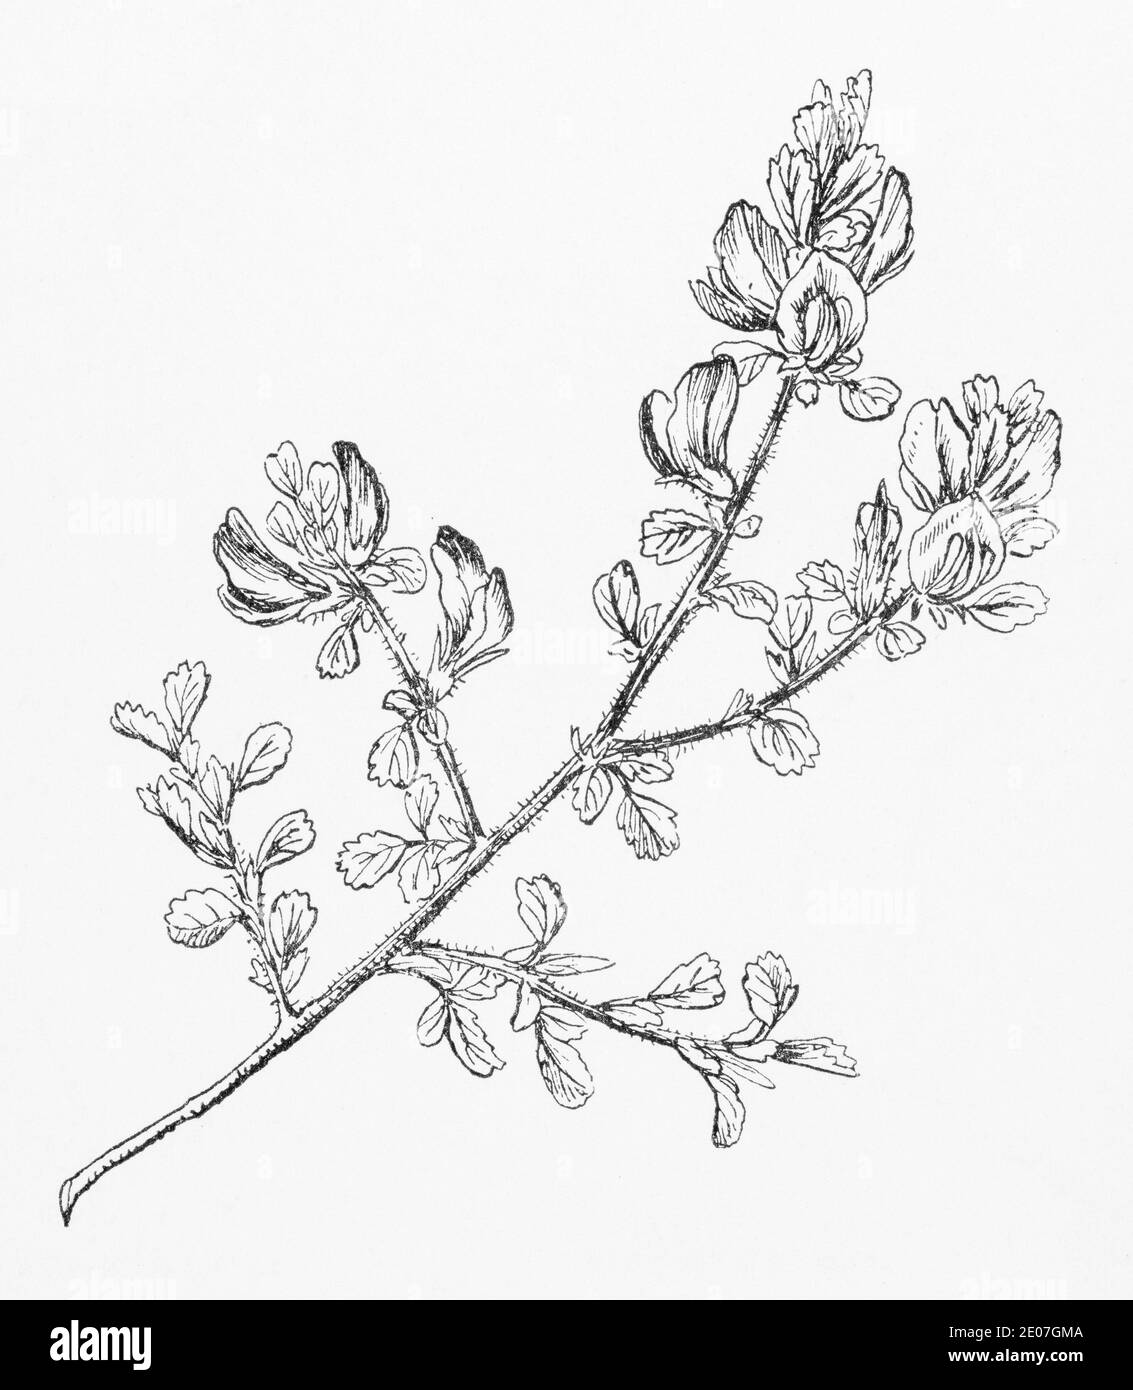 Alte botanische Illustration Gravur von Rest Harrow / Ononis repens, Ononis spinosa subsp. Traditionelle Heilkräuter Pflanze. Siehe Hinweise Stockfoto